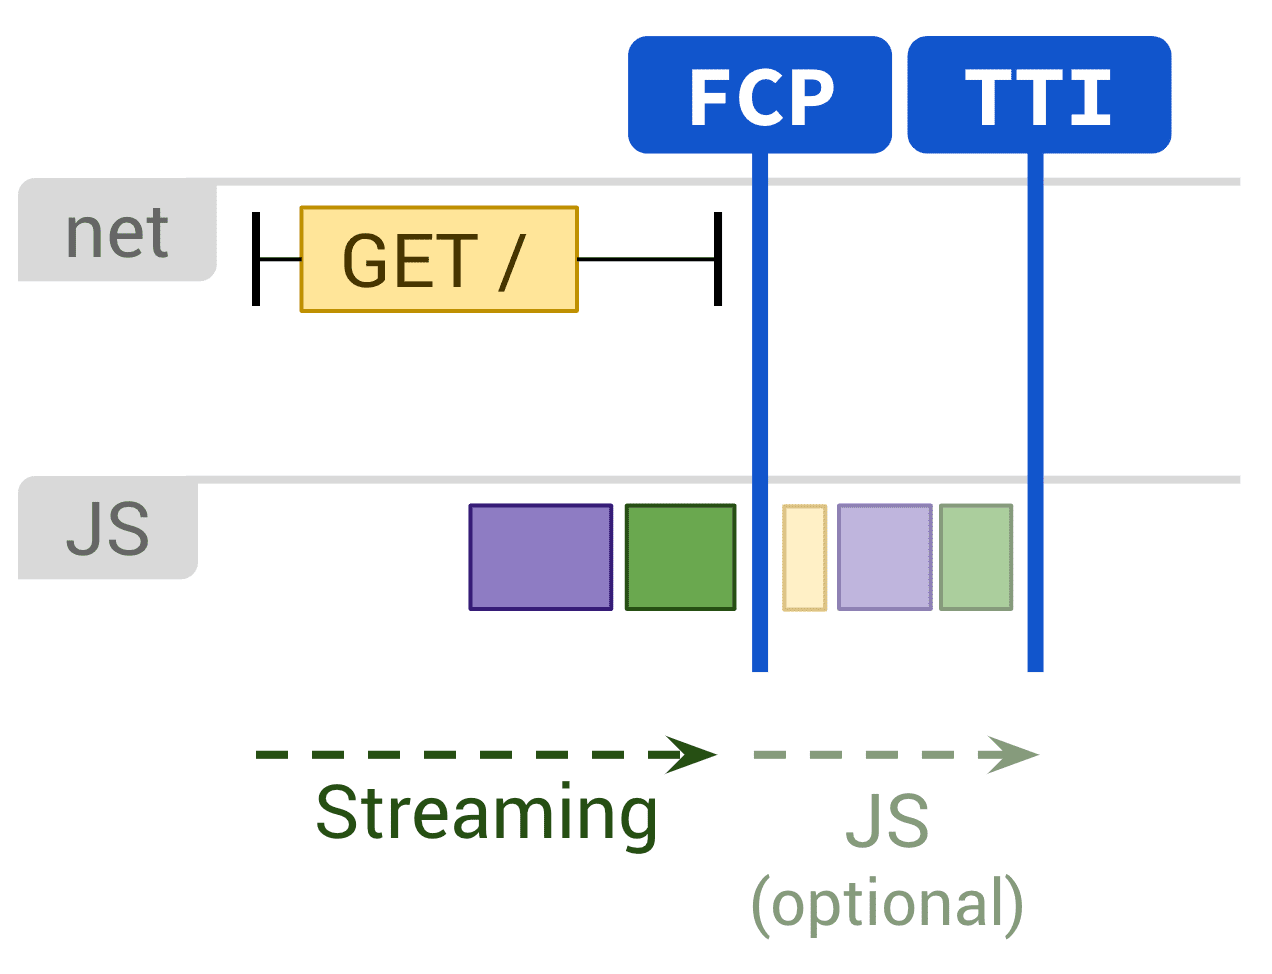 Diagrama mostrando a renderização estática e a execução opcional de JS afetando FCP e TTI.